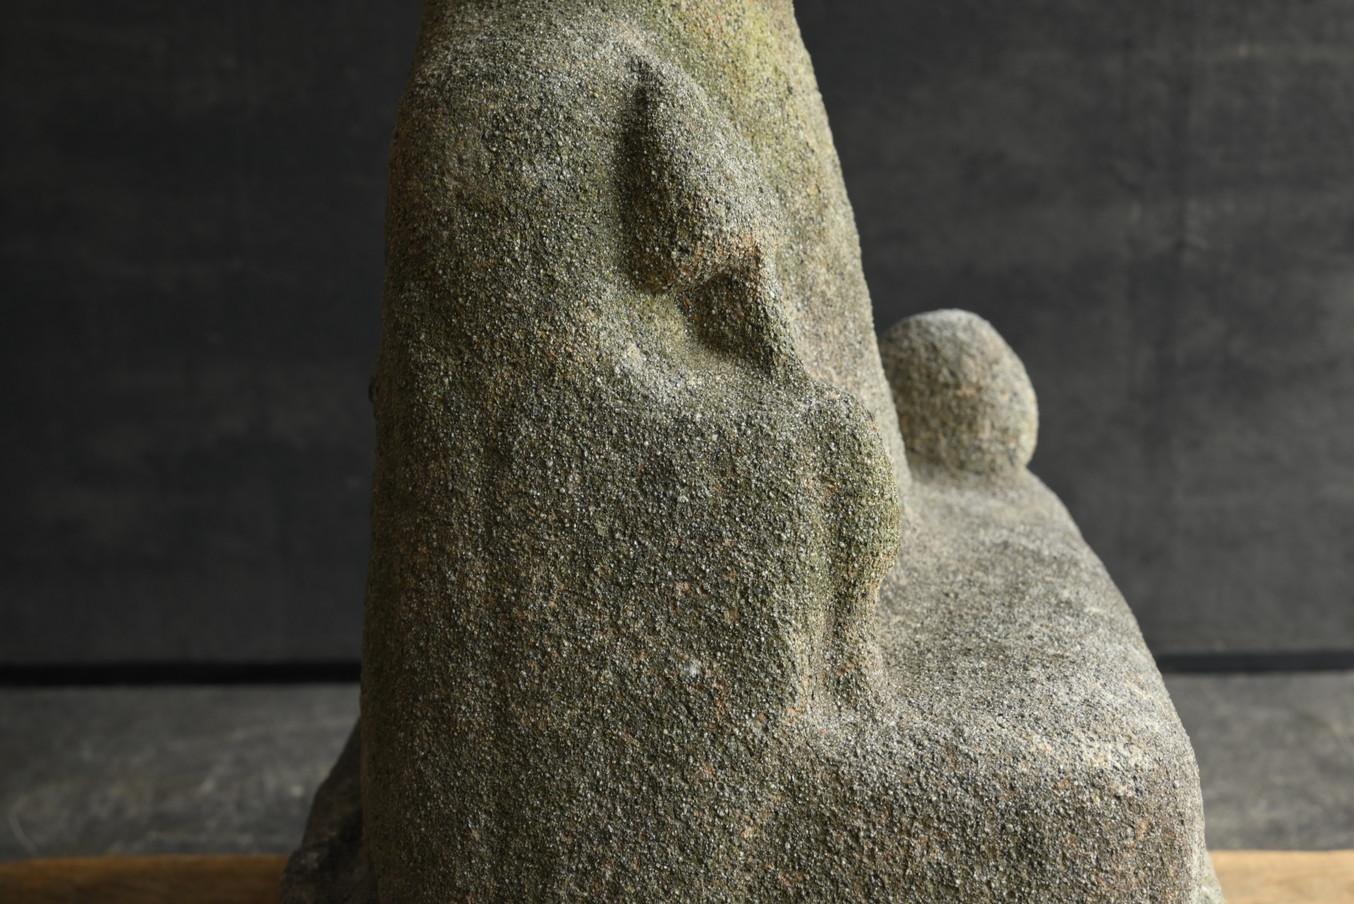 Japanese antique stone Buddha 